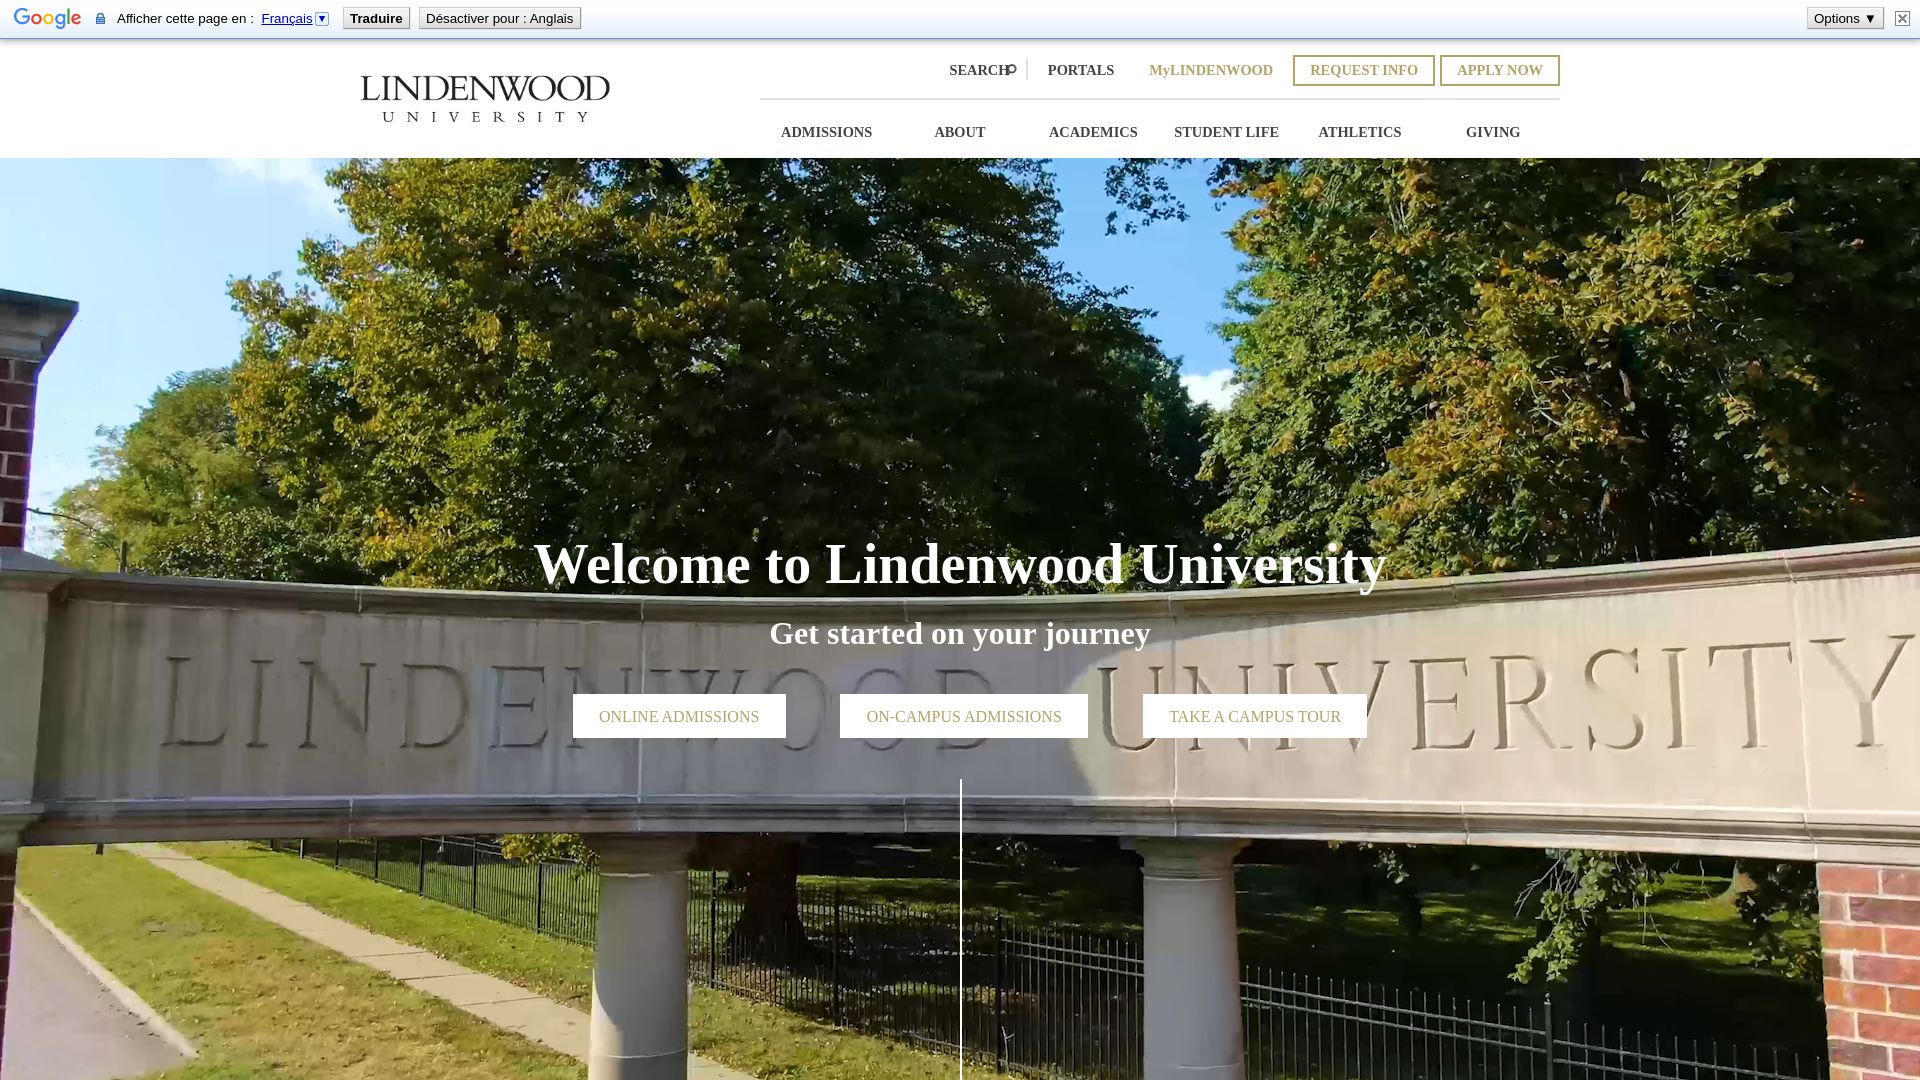 État du site web lindenwood.edu est   EN LIGNE